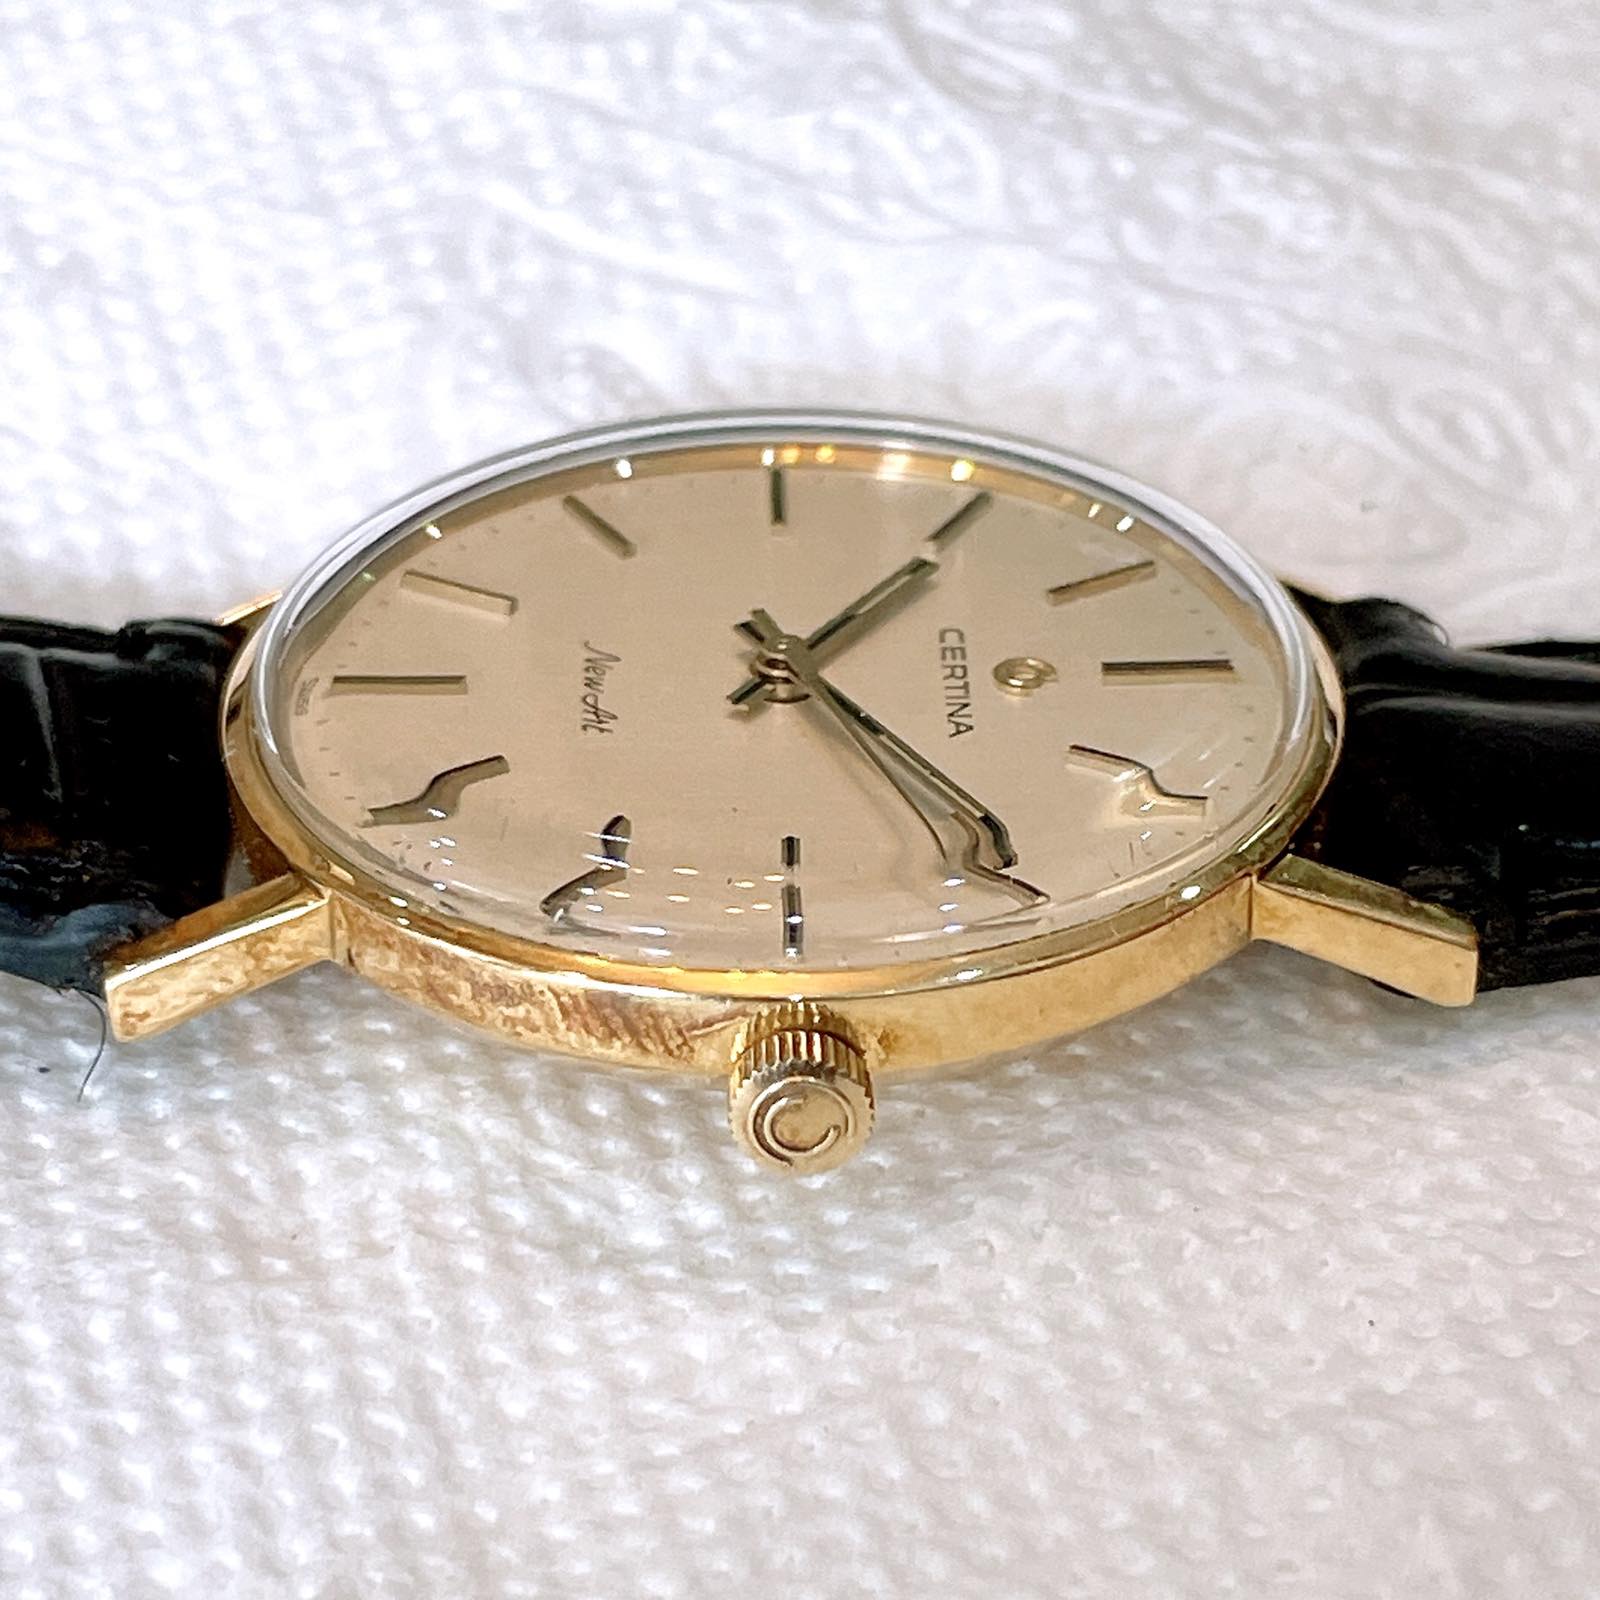 Đồng hồ cổ Certina lên dây vàng đúc 18k chính hãng thụy Sĩ 